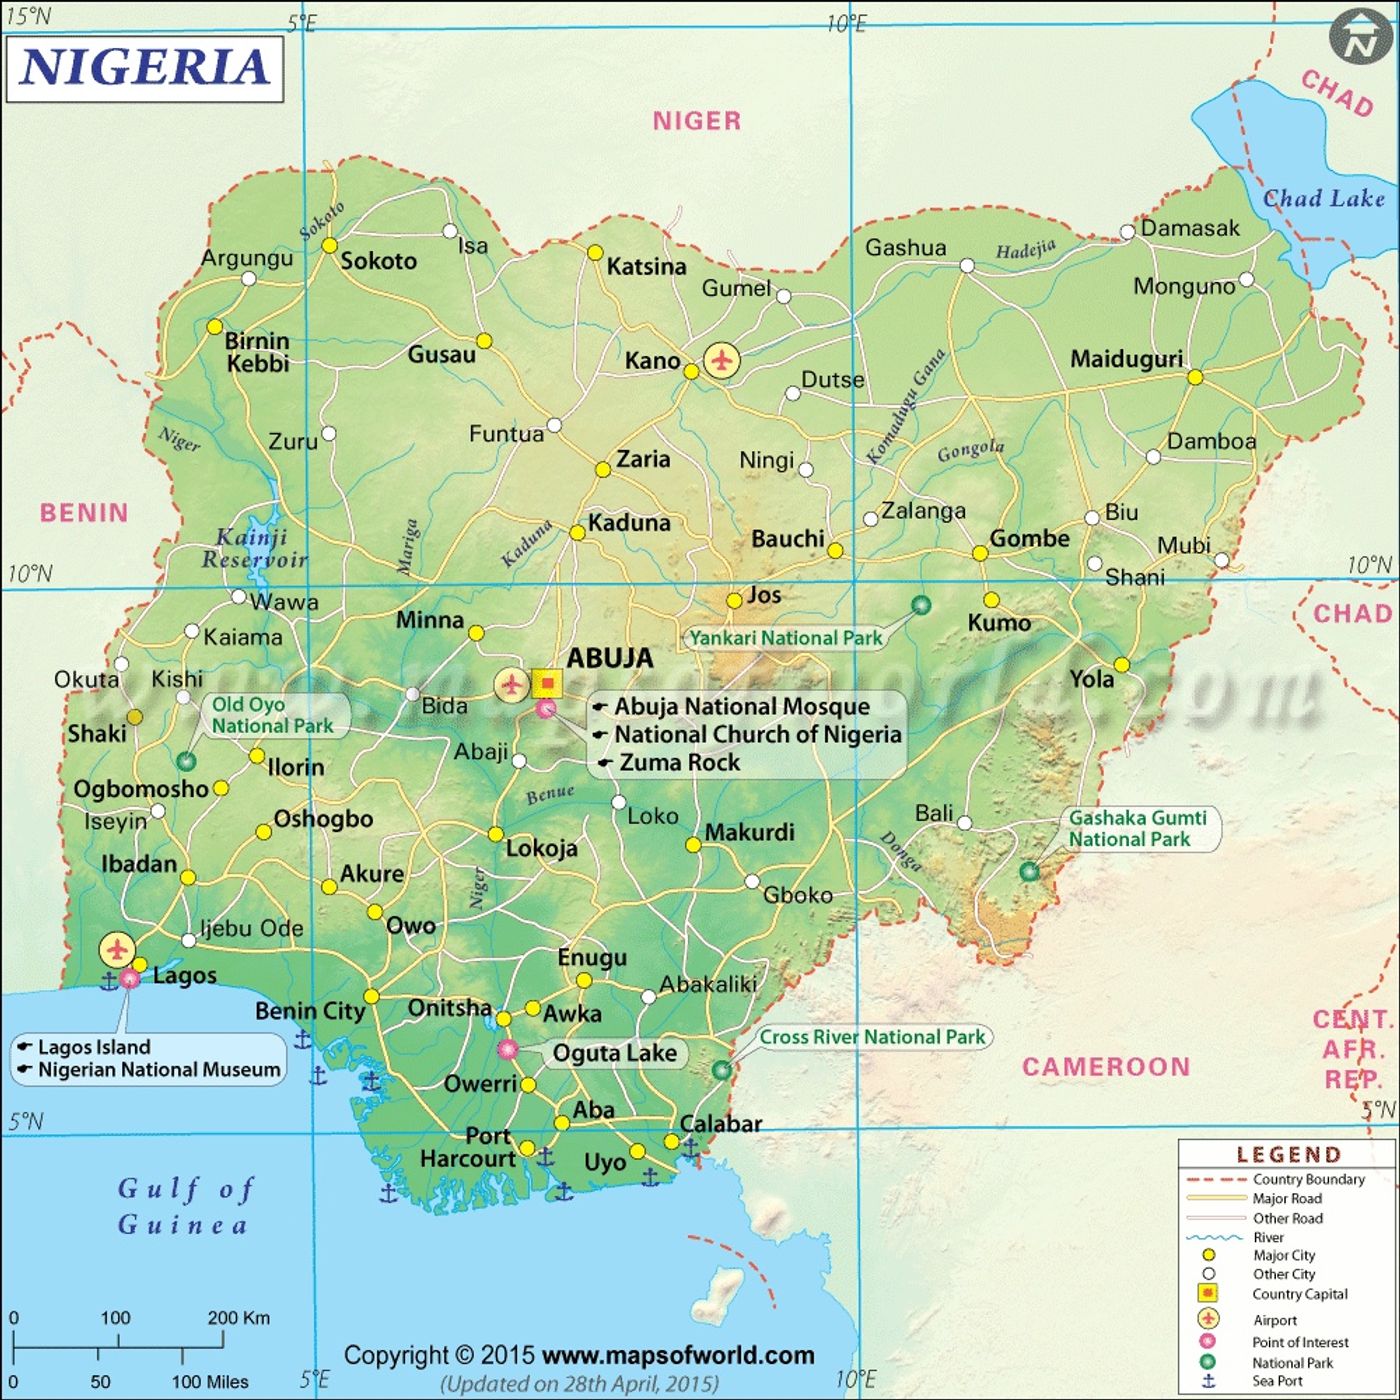 Nigeria Global Village Analysis